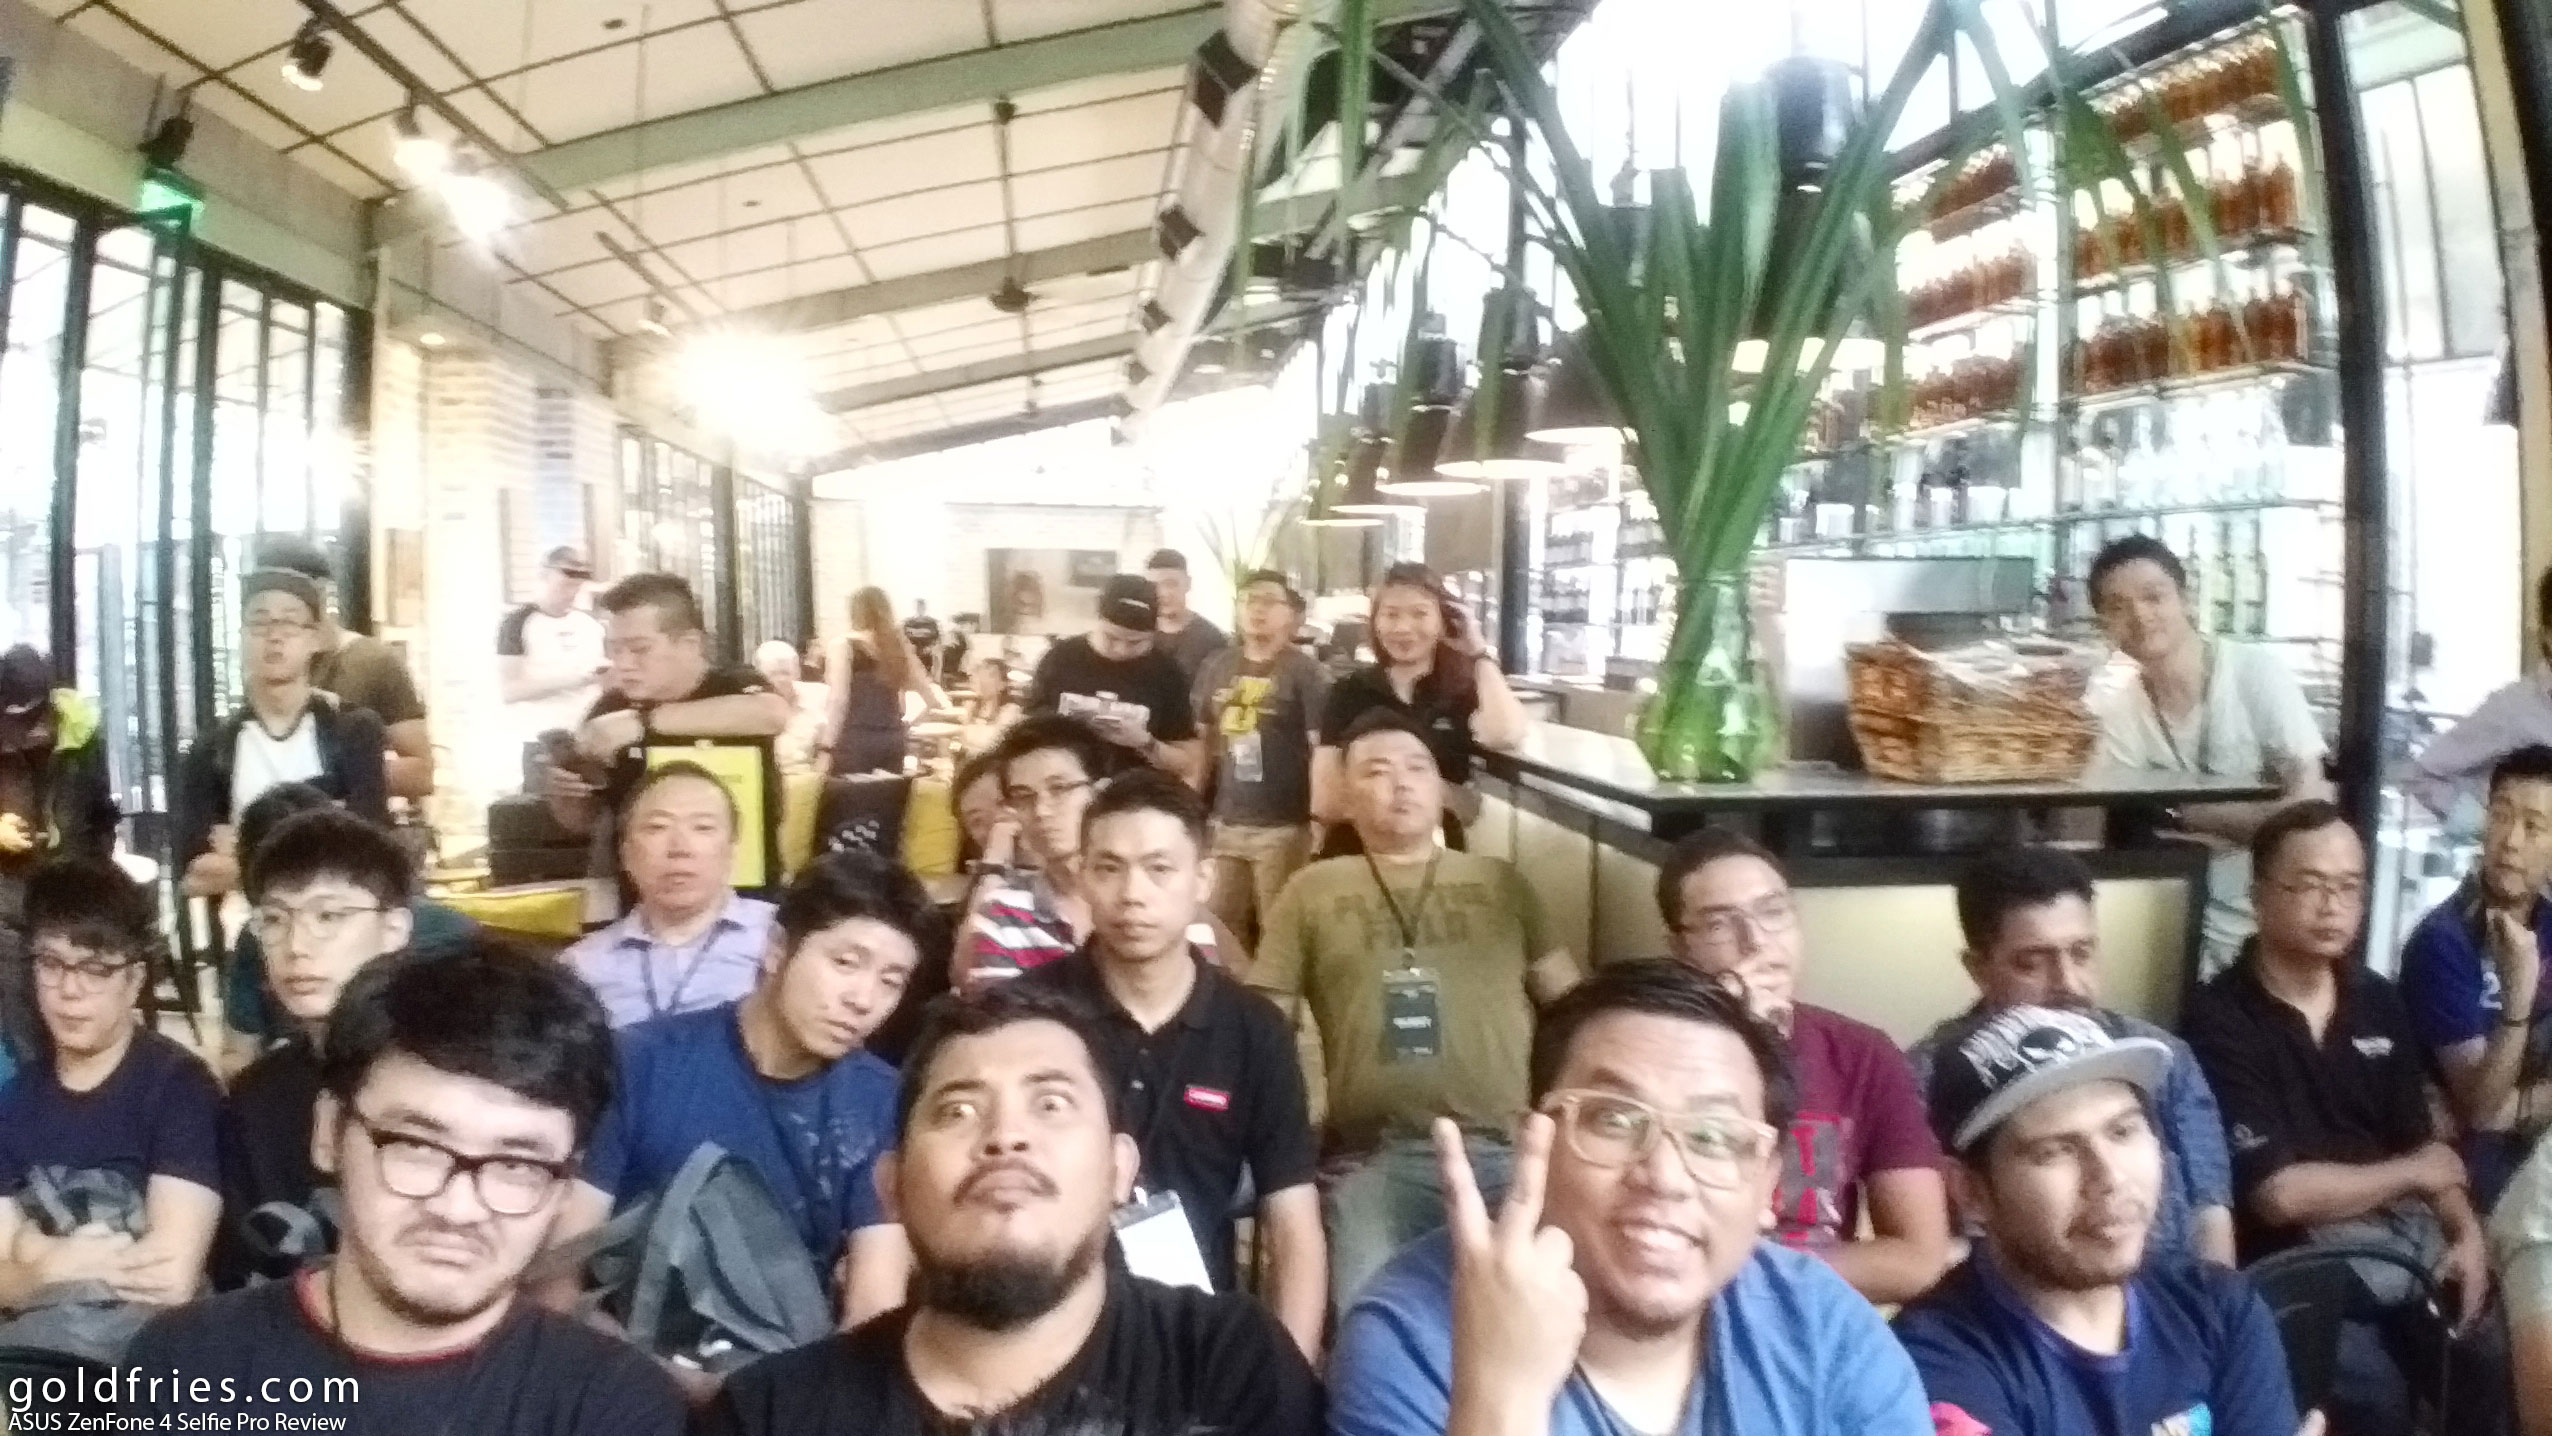 ASUS ZenFone 4 Selfie Pro Review